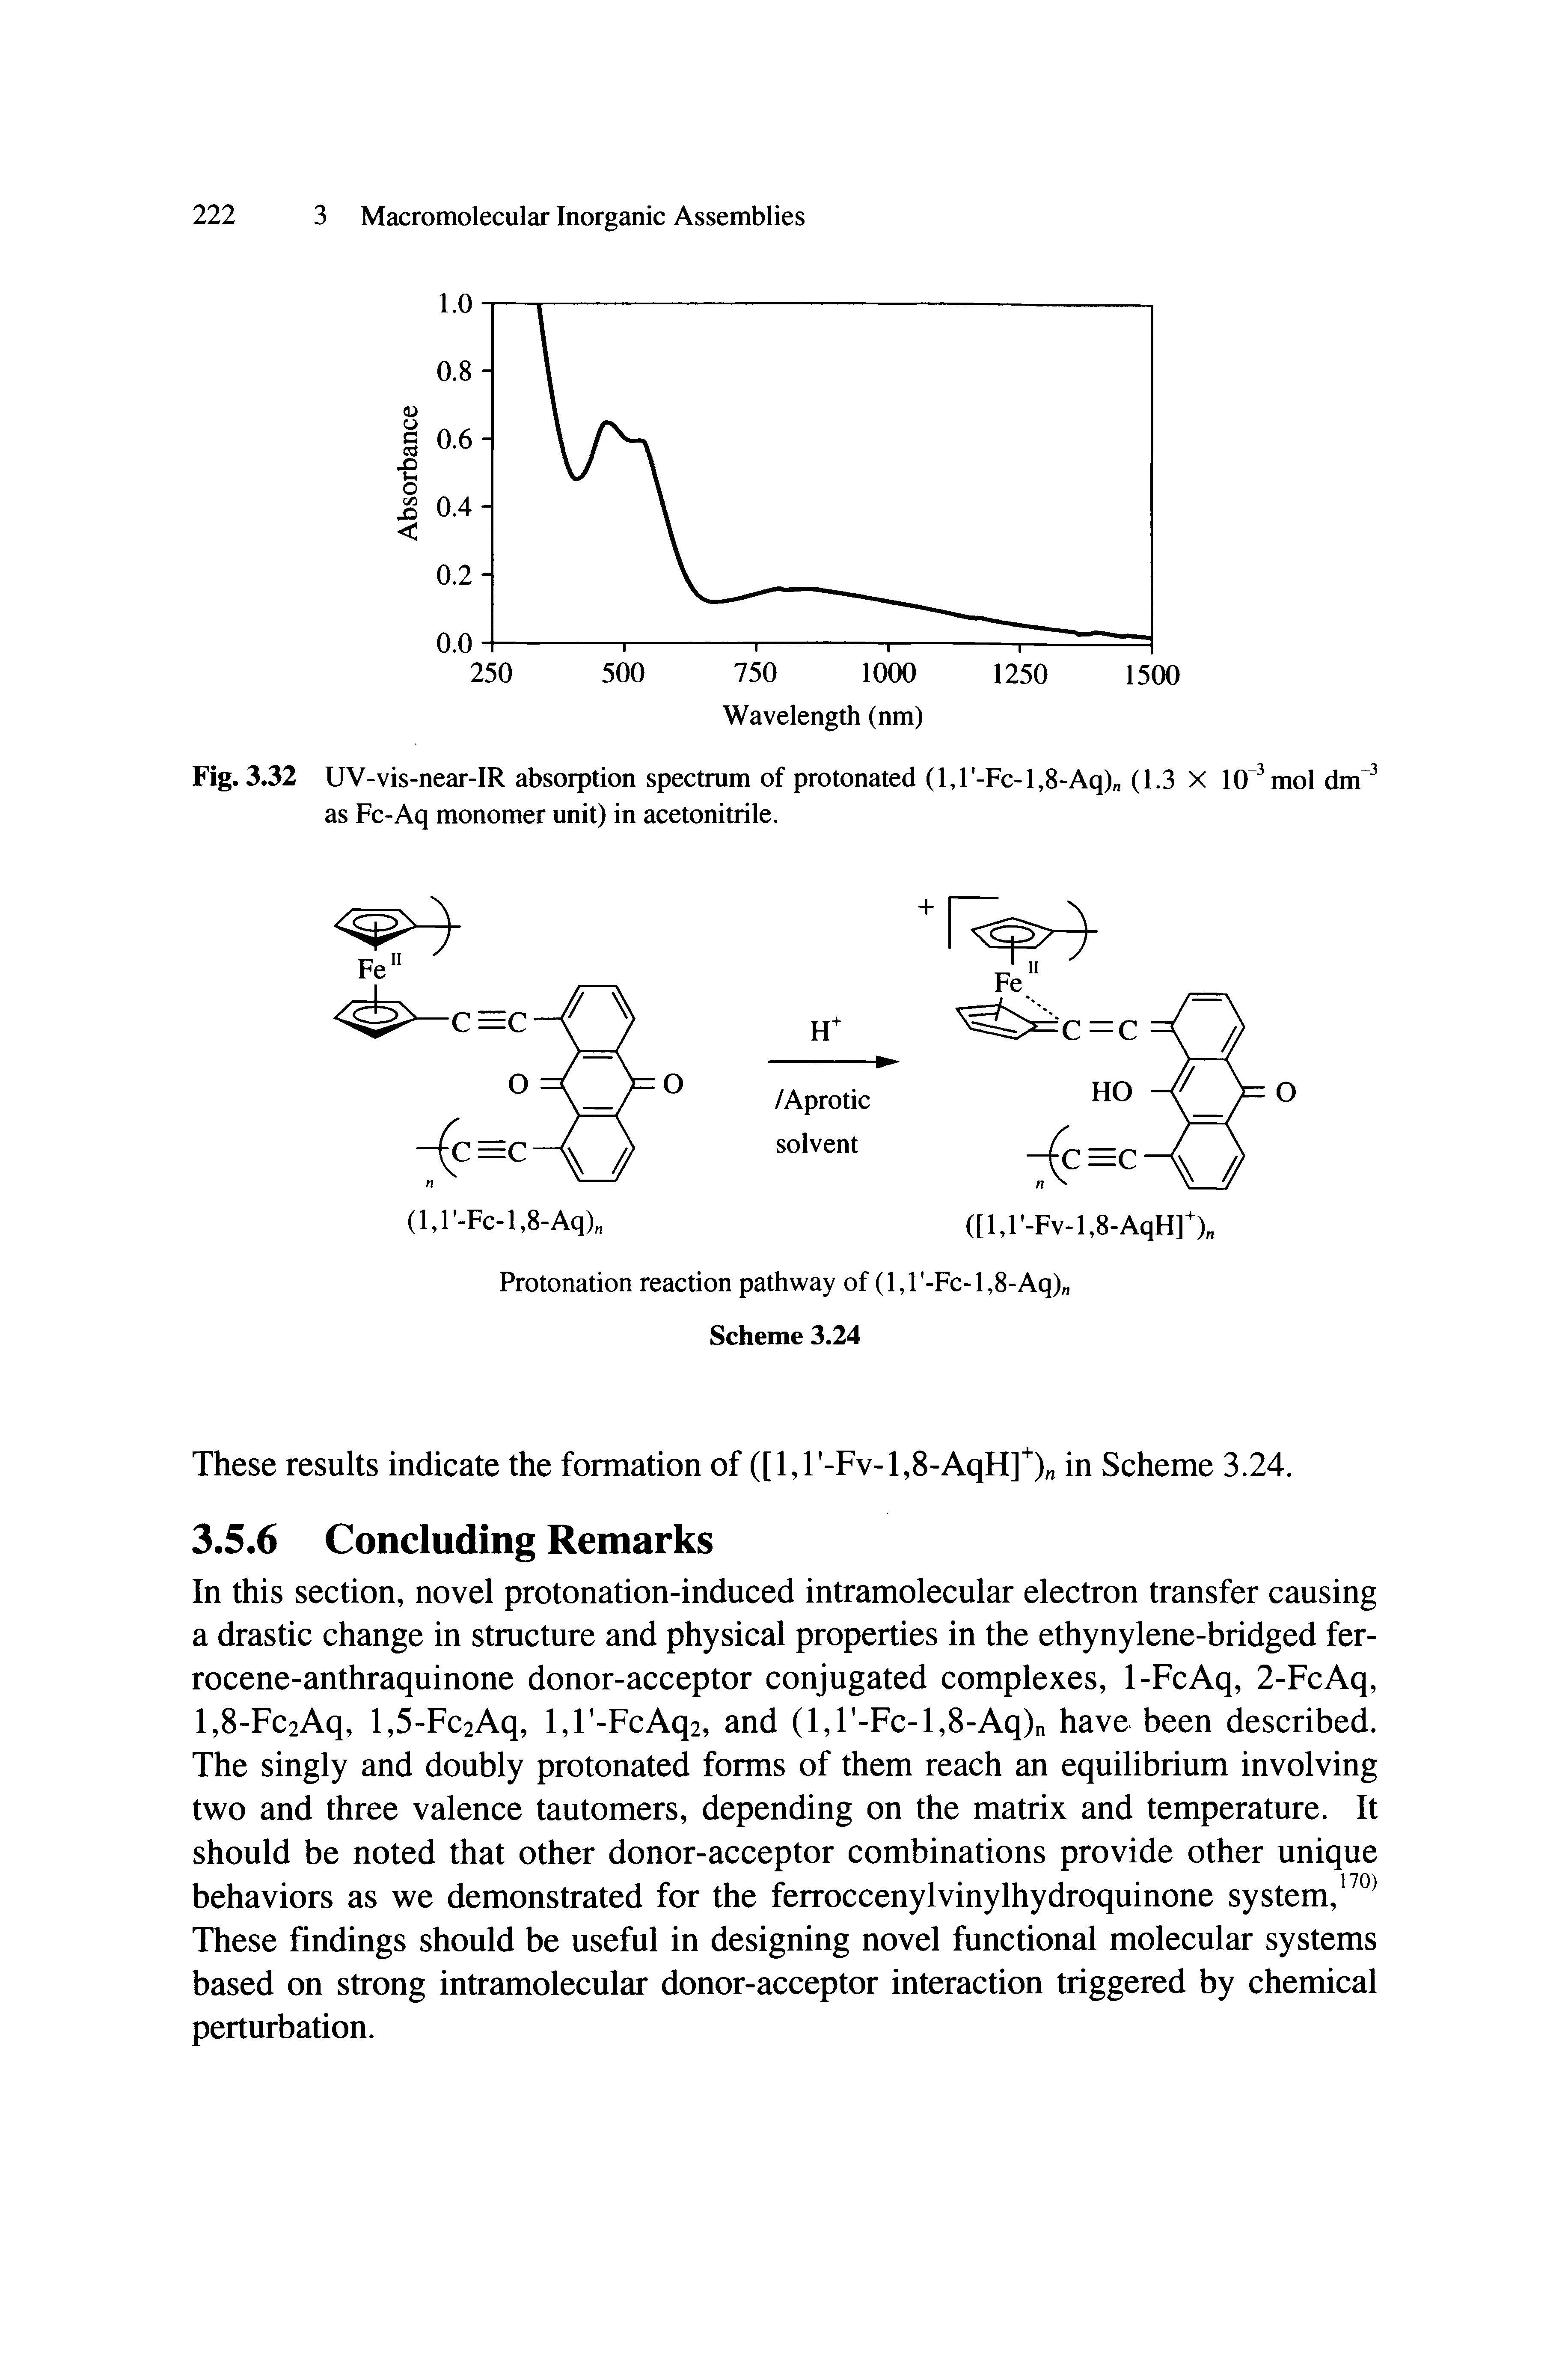 Fig. 3.32 UV-vis-near-IR absorption spectrum of protonated (l,r-Fc-l,8-Aq) (1.3 X 10 mol dm as Fc-Aq monomer unit) in acetonitrile.